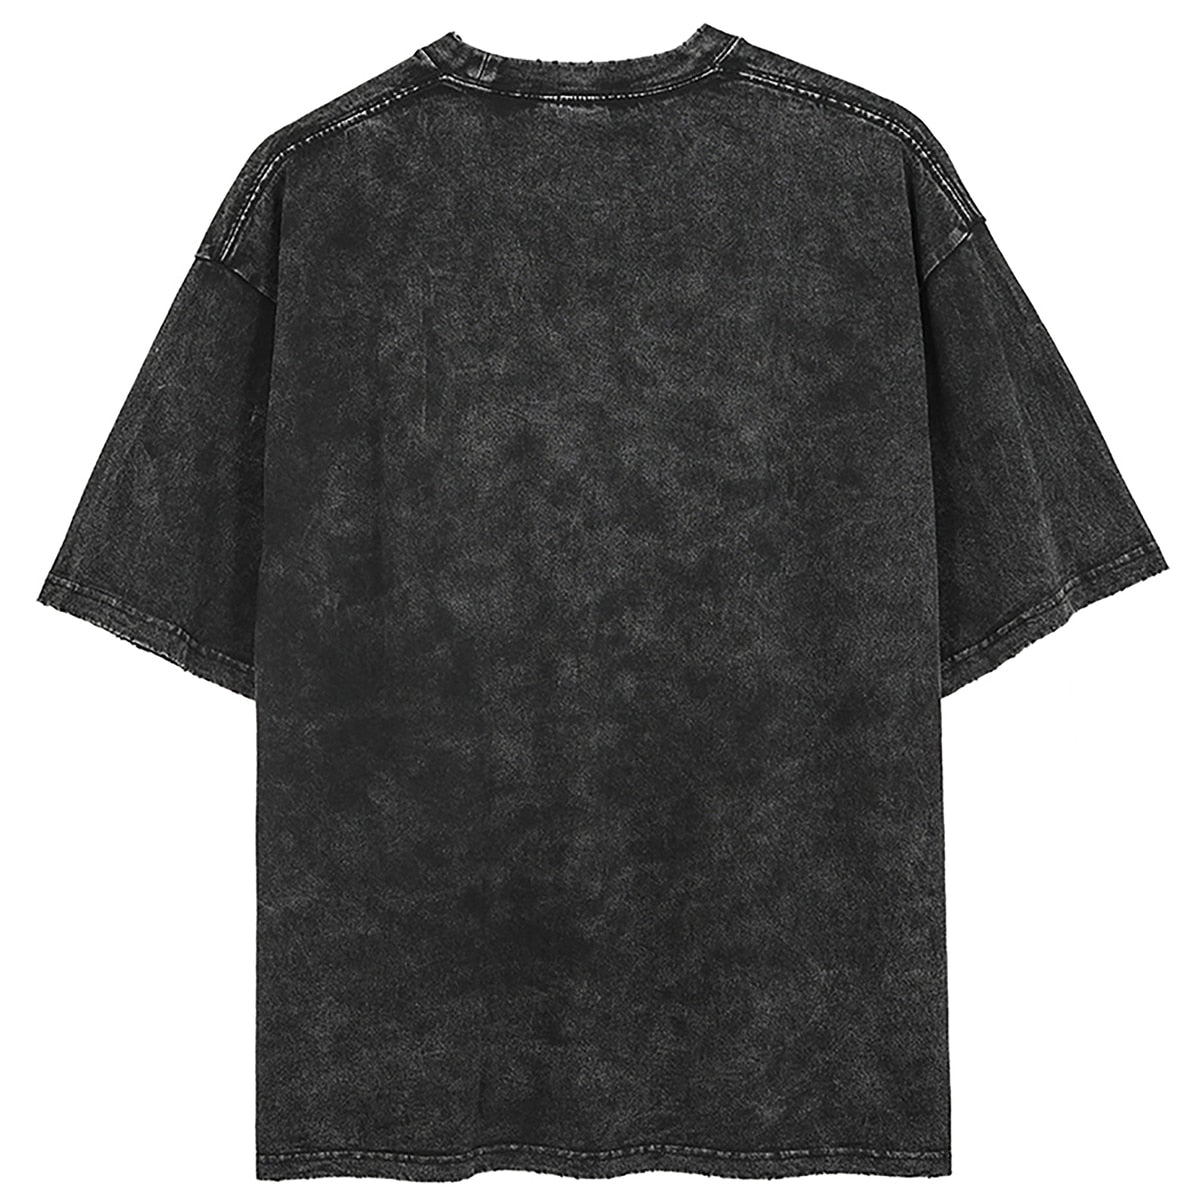 "BLACK SWORDSMAN" - Berserk Anime Vintage Washed Oversized T-Shirt